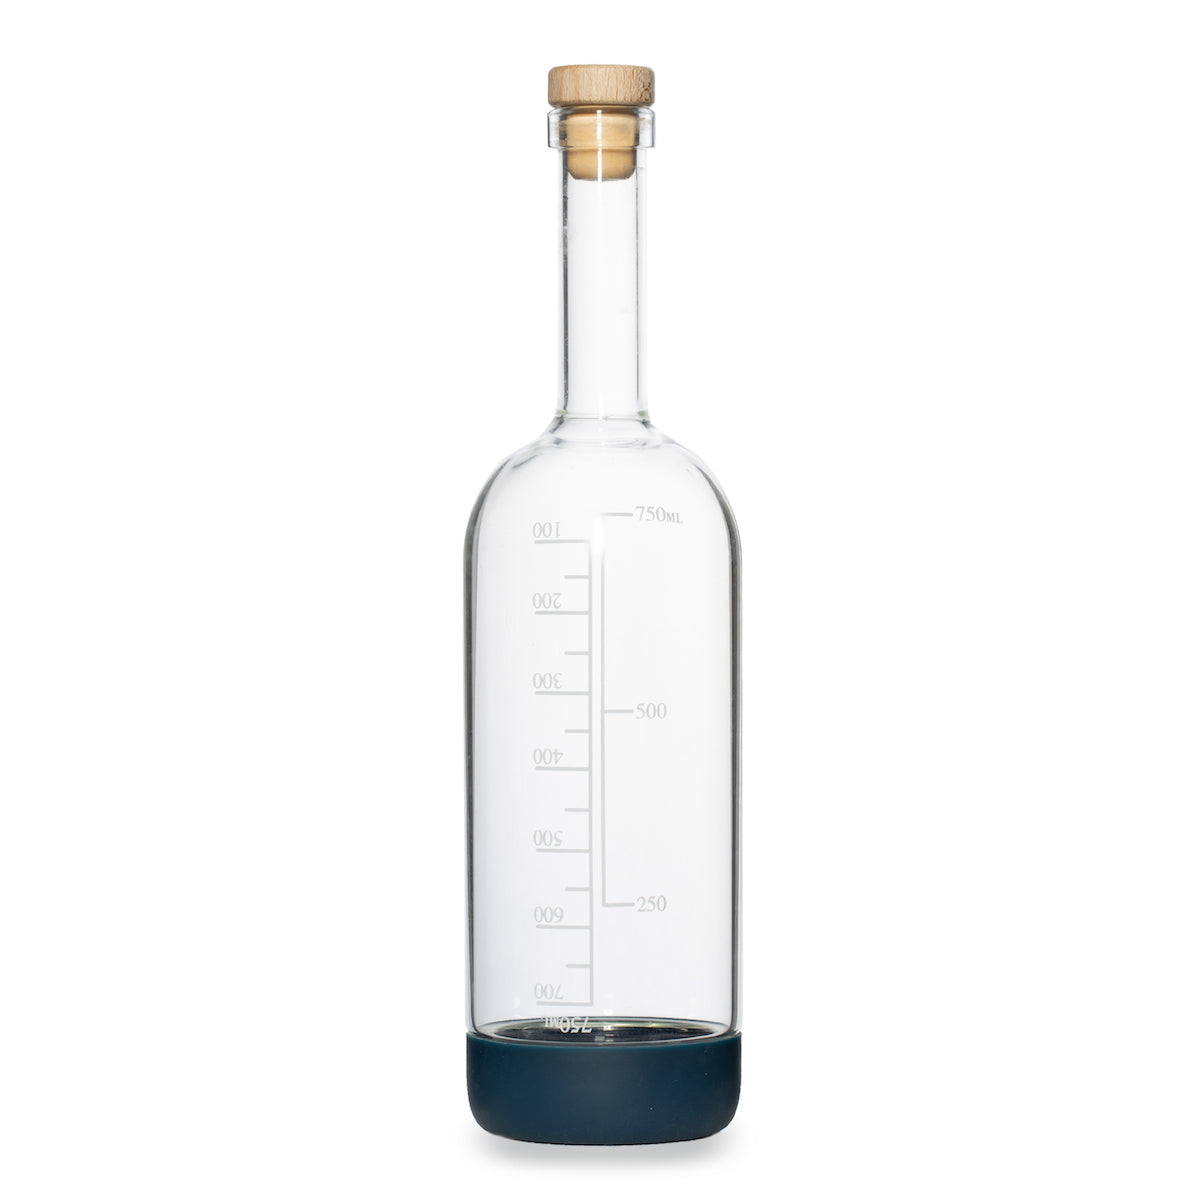  6 Packs Small Juice Mini Glass Liquor Wine Bottles for